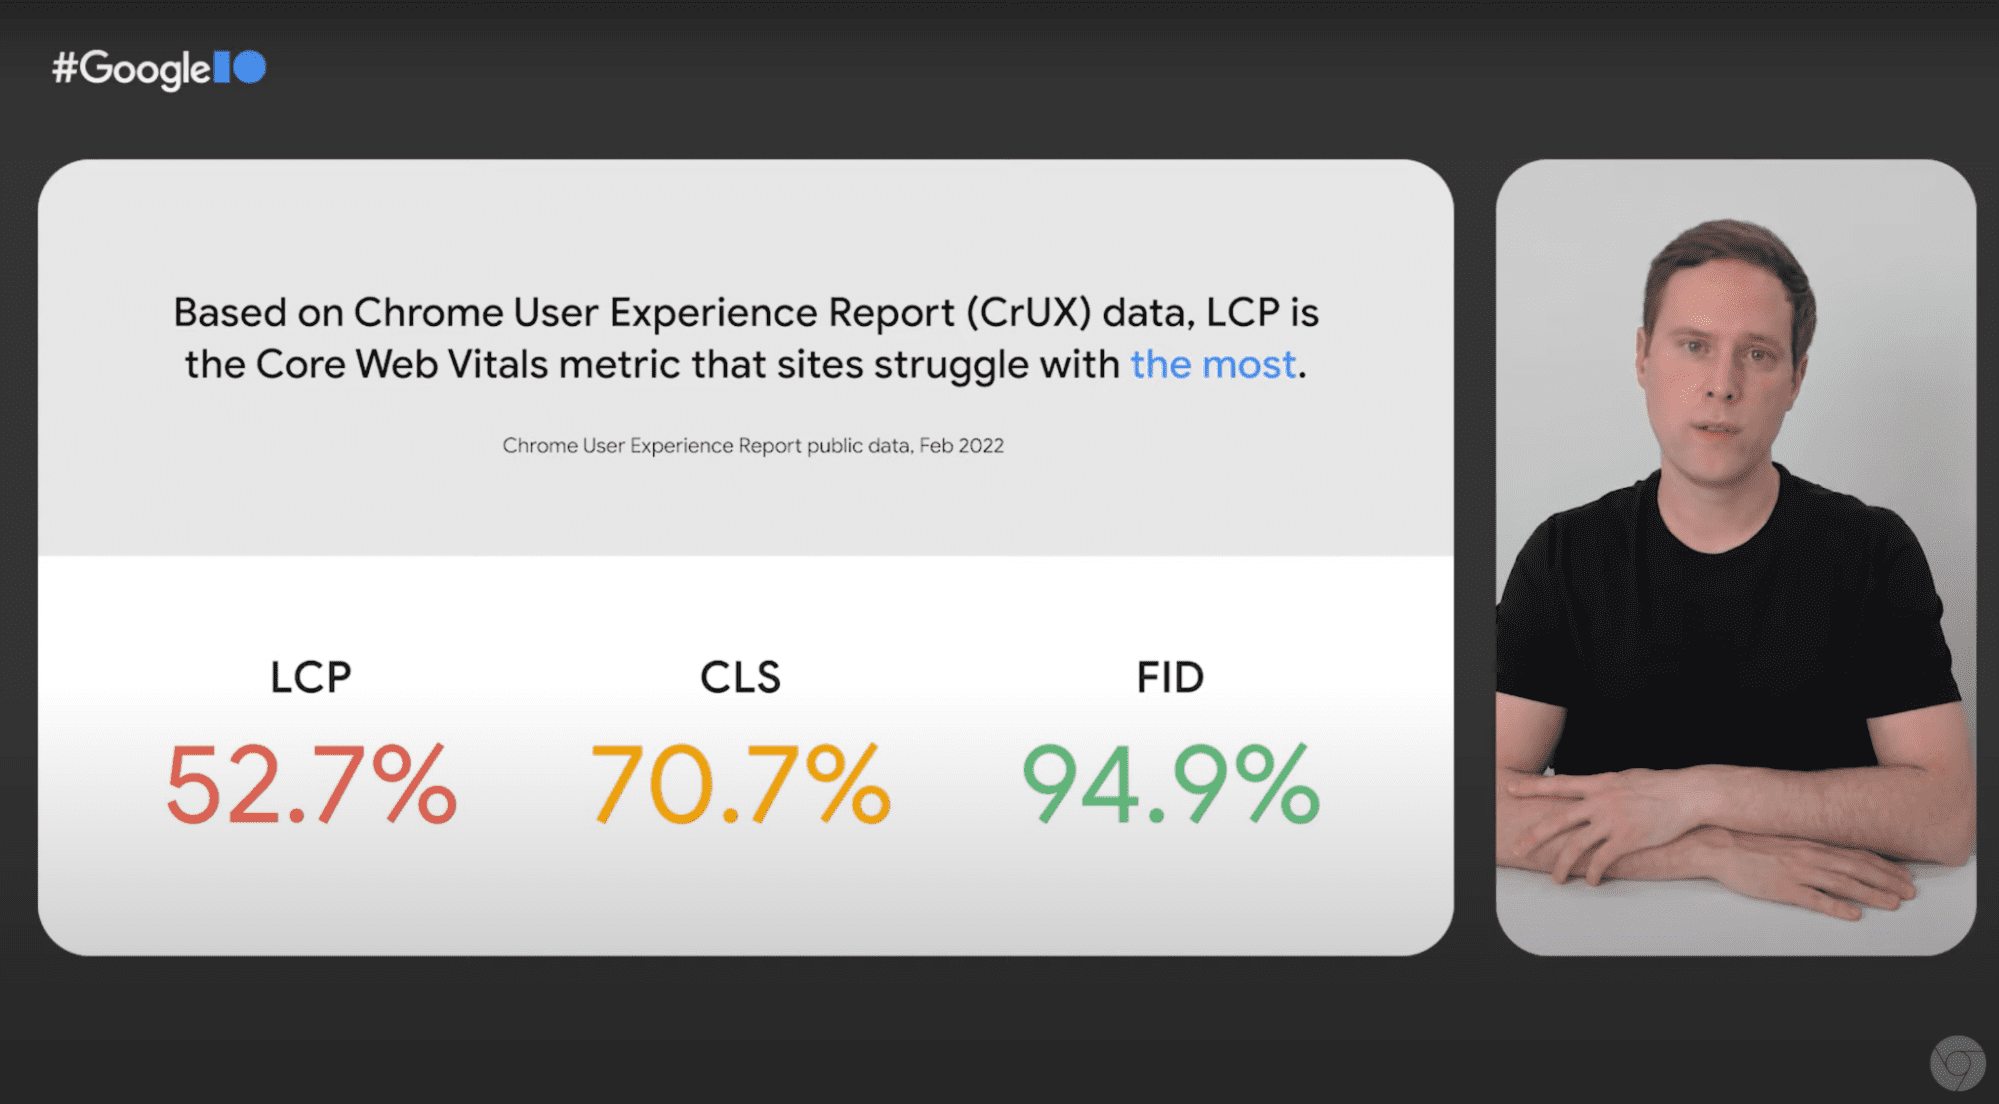 演讲者分享的 LCP 值为 52.7% 的静态画面